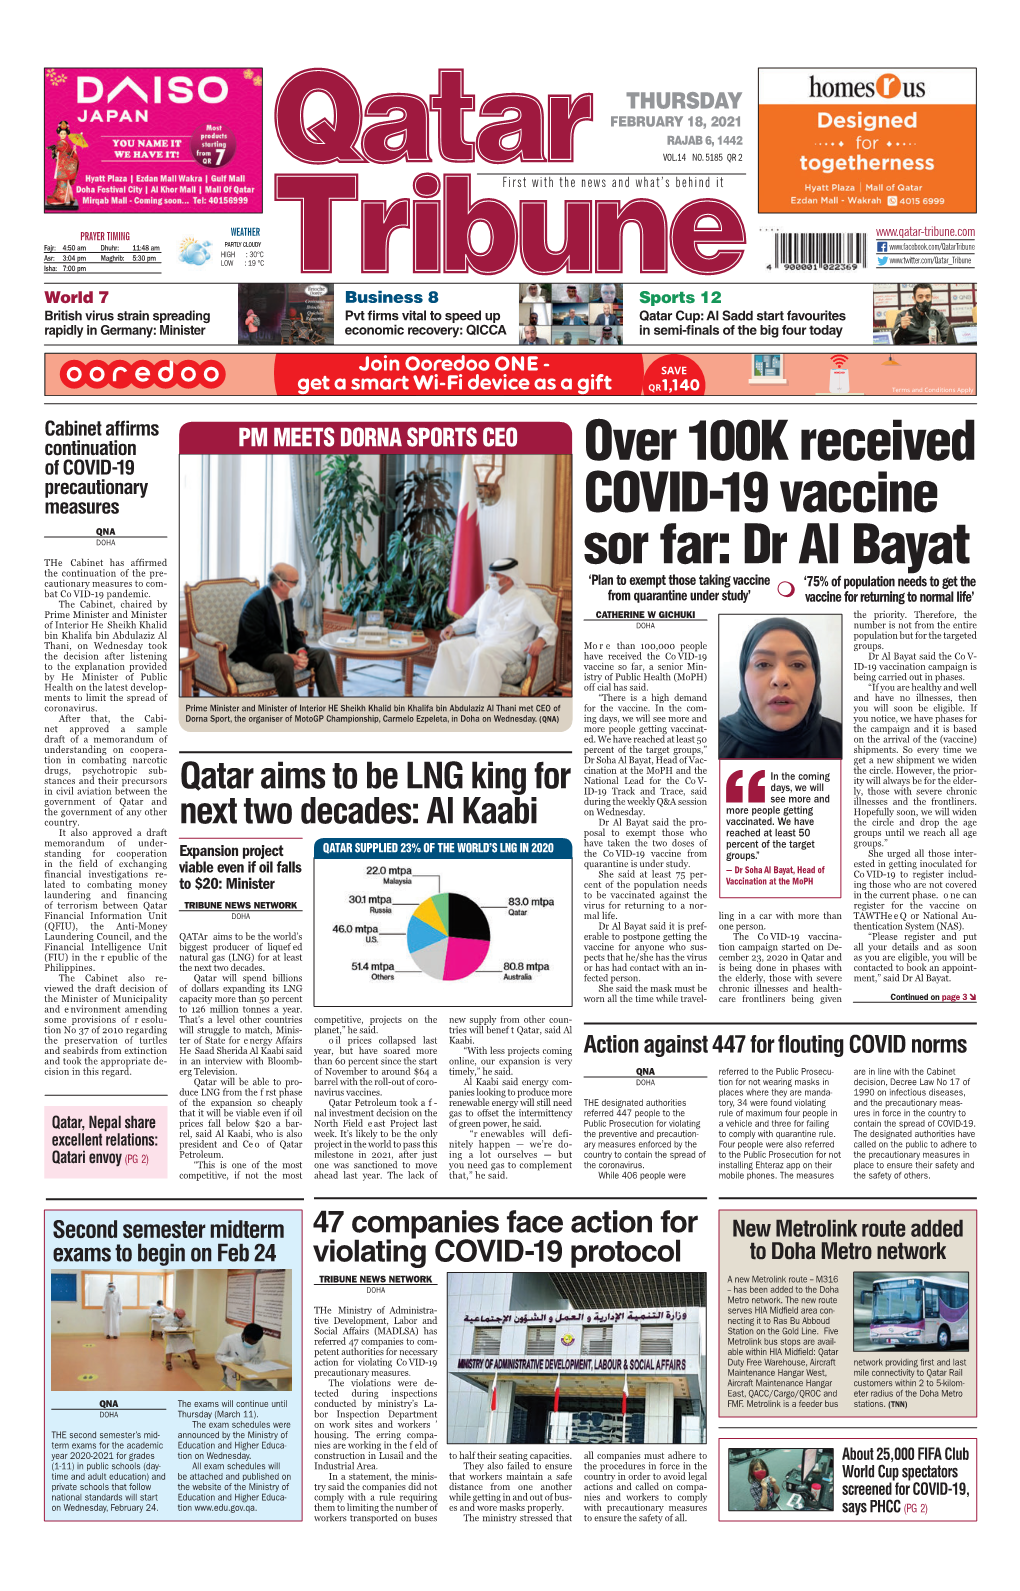 Over 100K Received COVID-19 Vaccine Sor Far: Dr Al Bayat